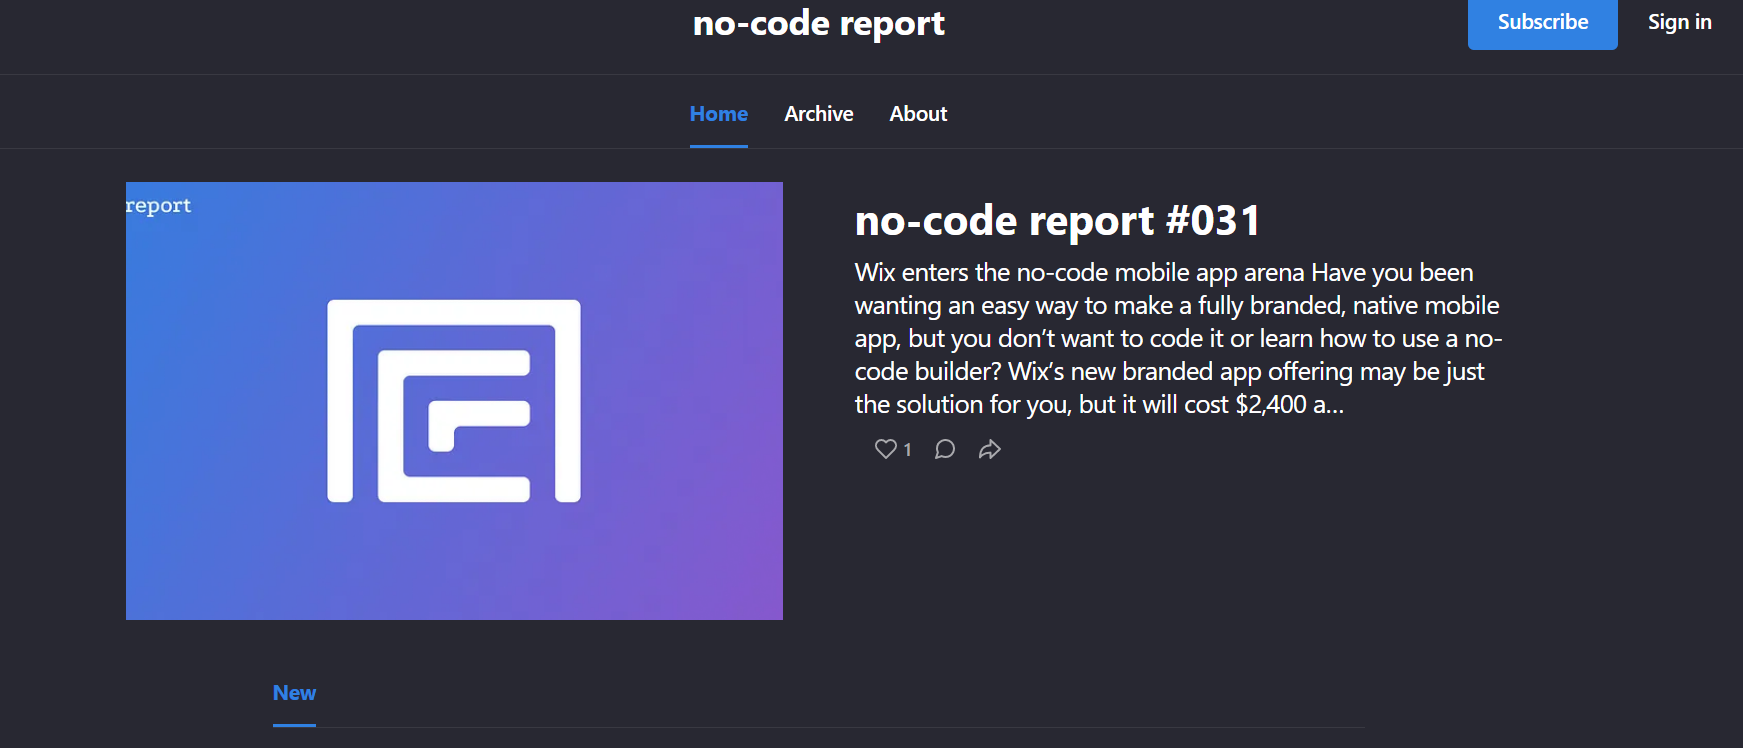 No-Code Report Newsletter